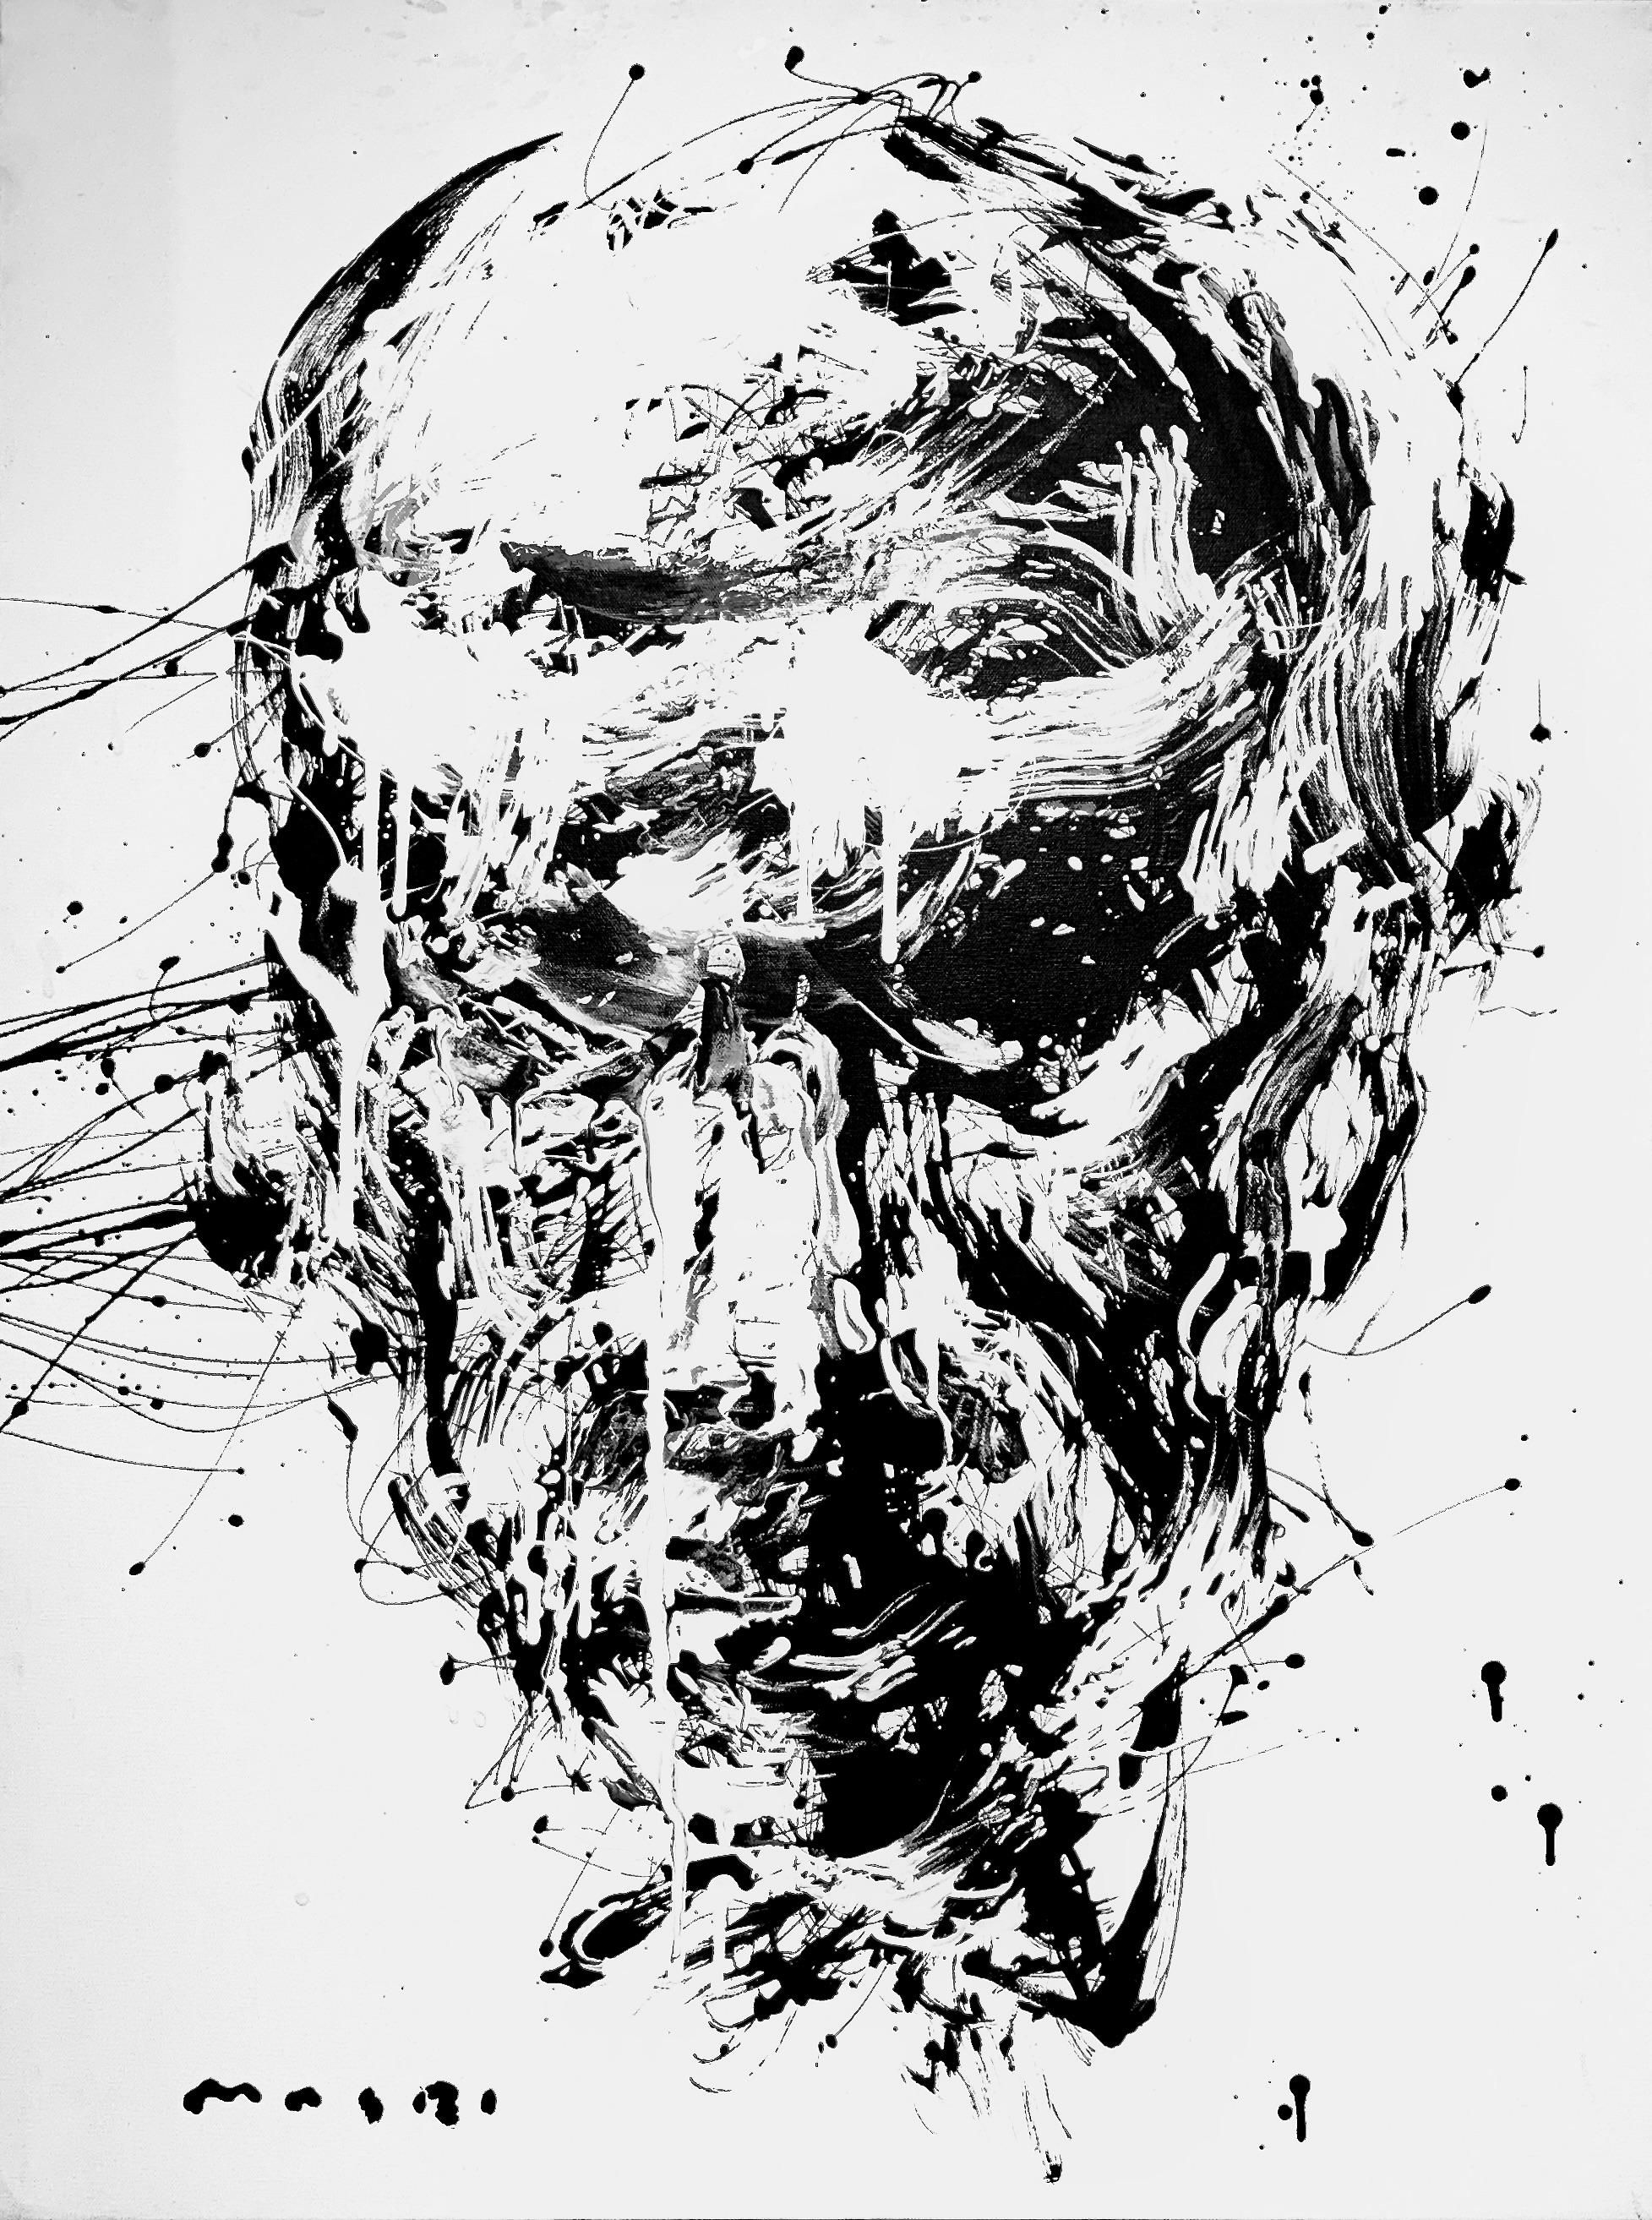 Stoic' by Masri - Portrait abstrait en noir et blanc - Peinture mixte